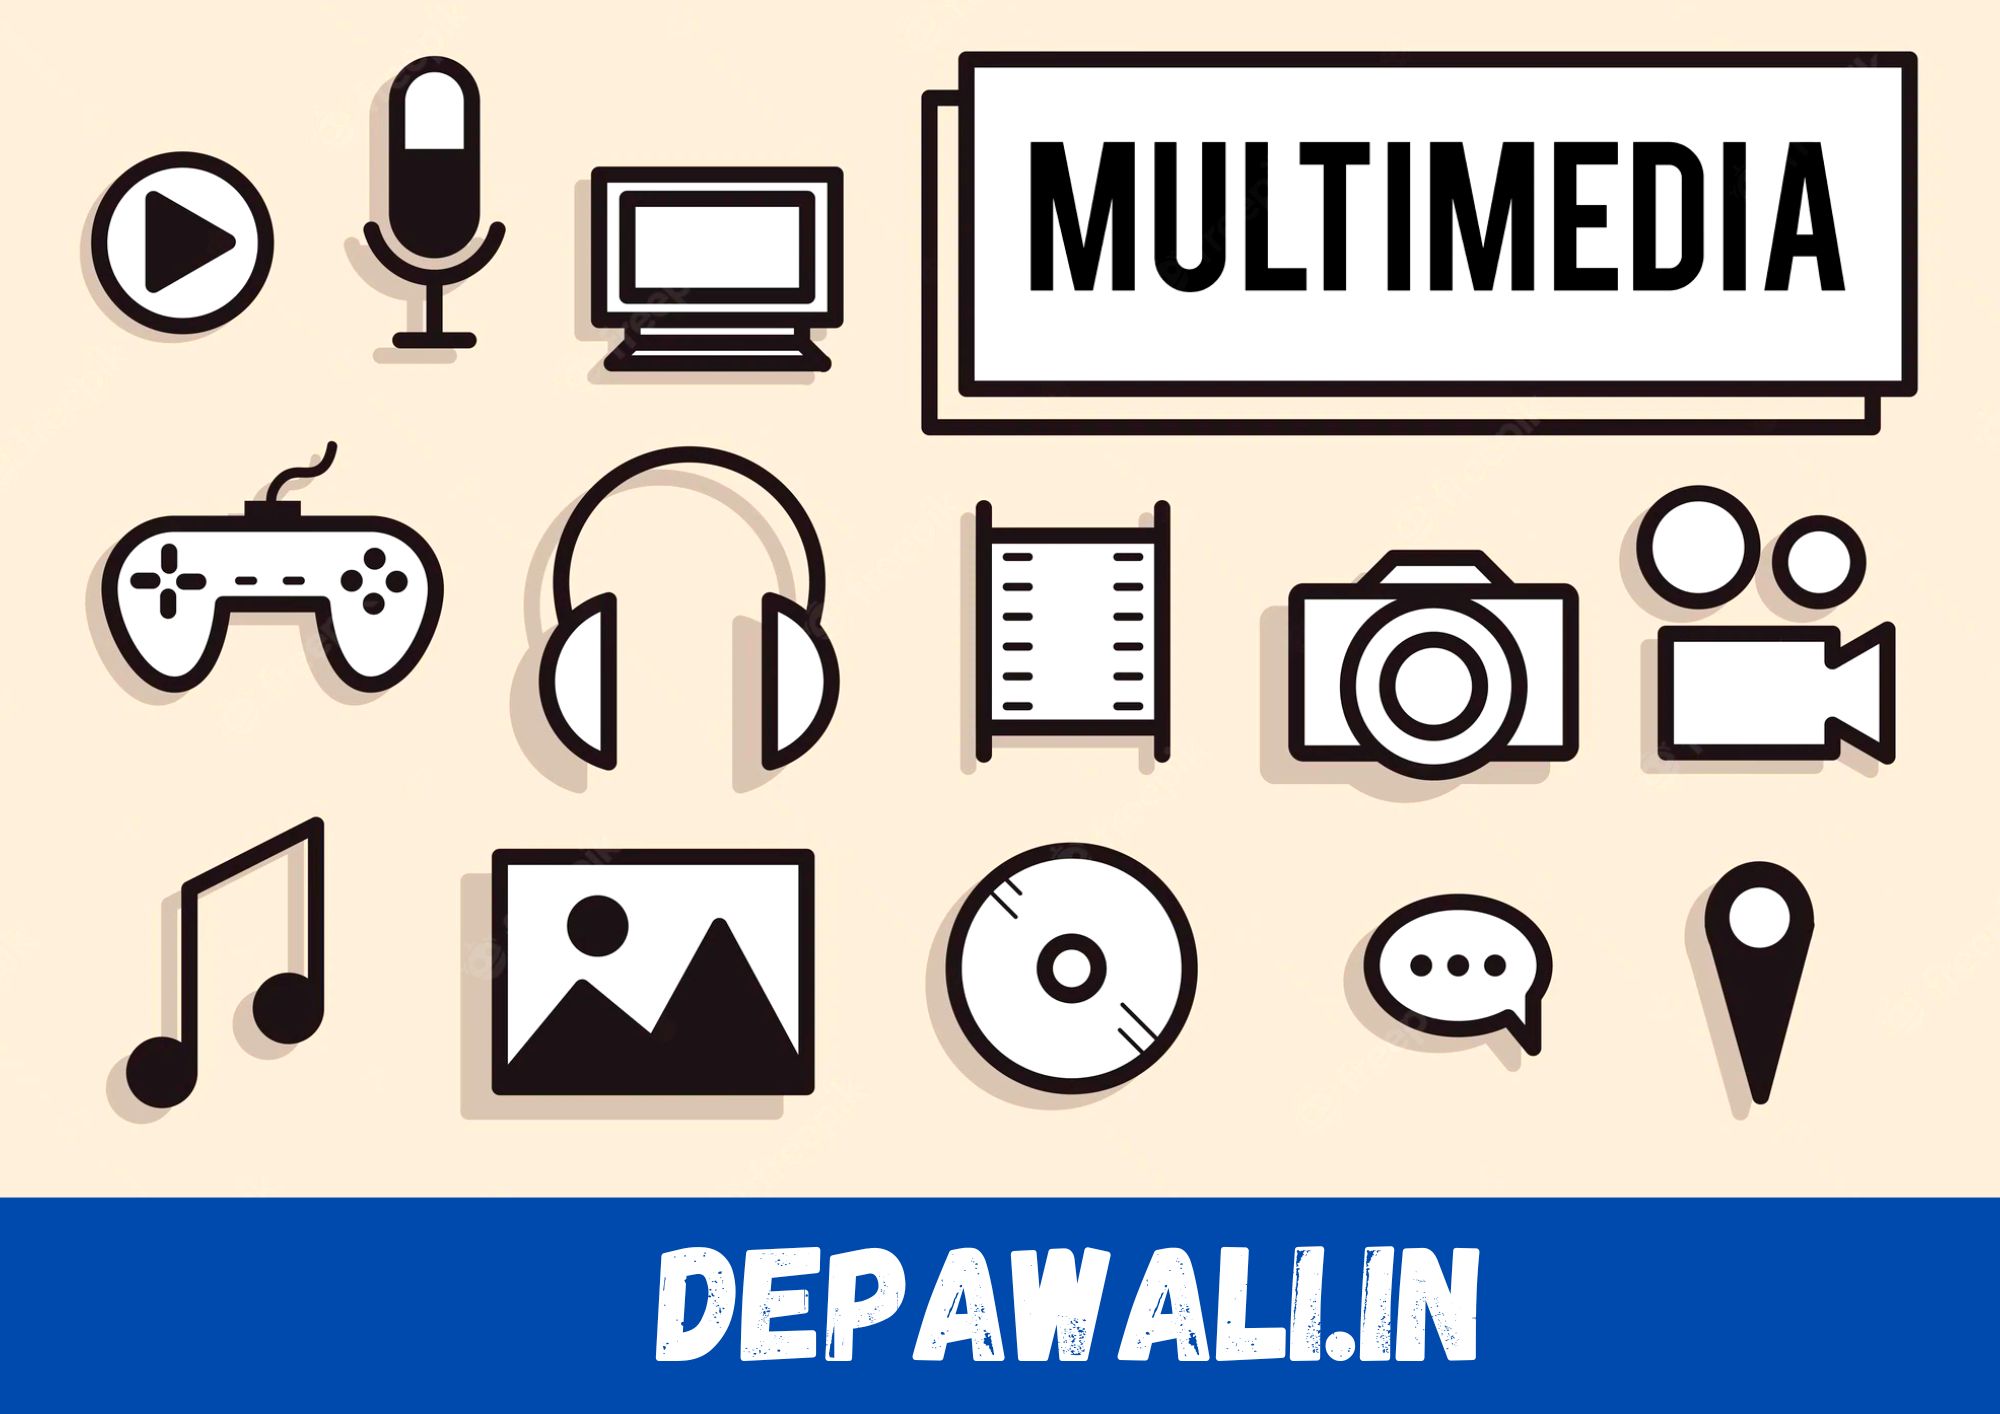 मल्टीमीडिया क्या है? प्रकार, उपयोग, फायदे और नुकसान - (Multimedia In Hindi)